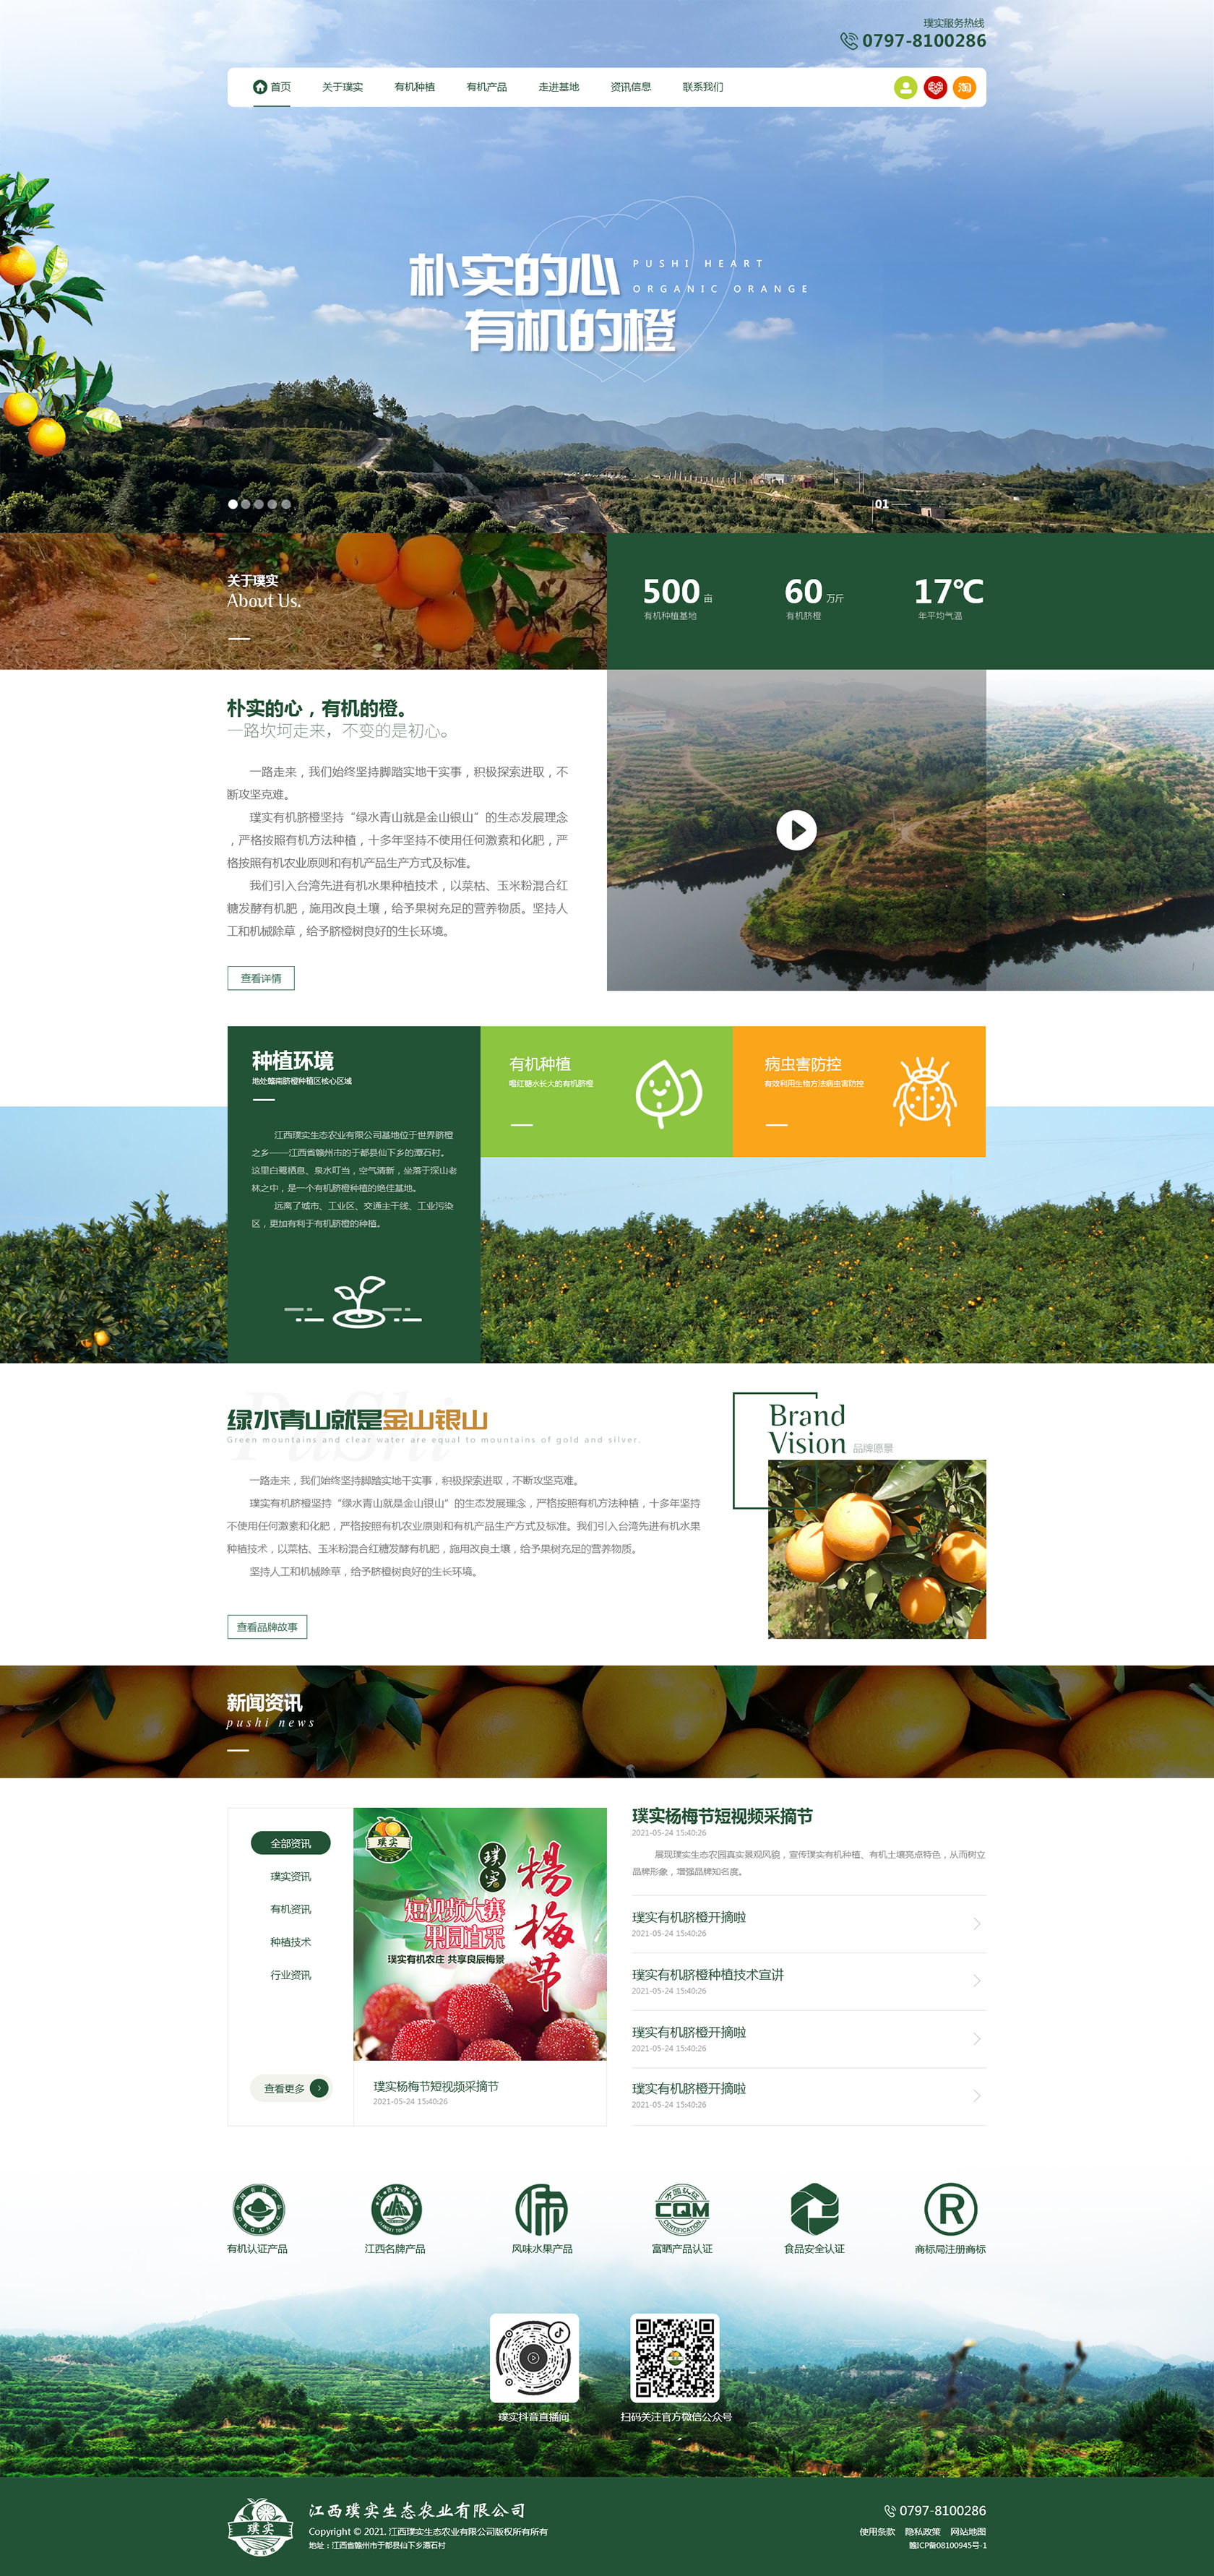 原创脐橙有机农产品企业官网自适应html静态模板